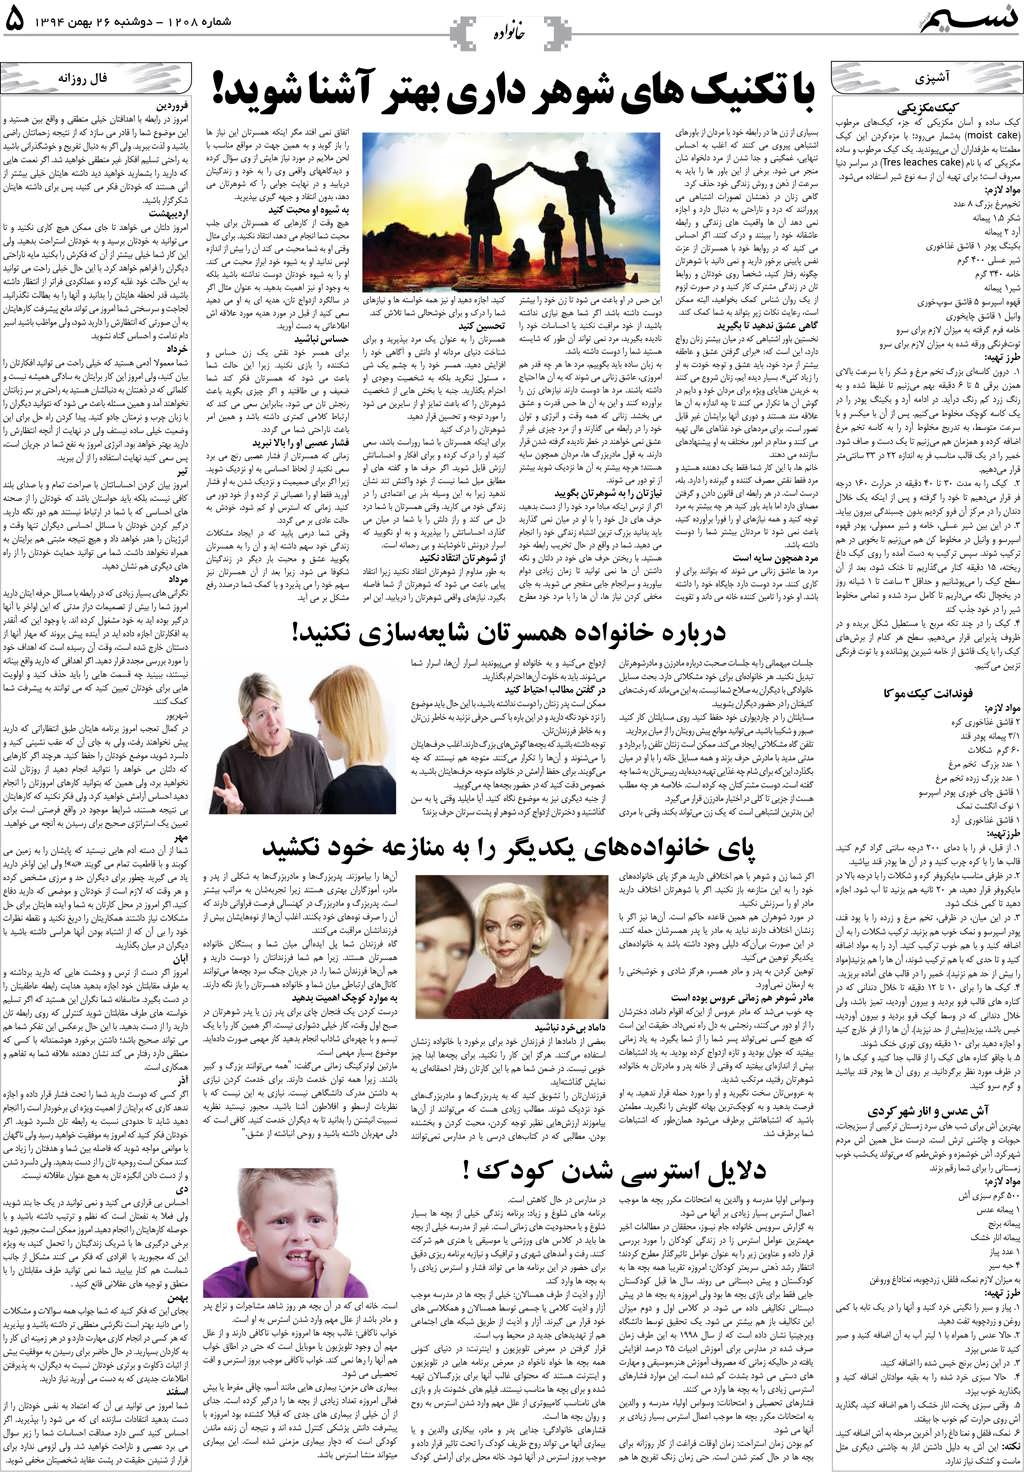 صفحه خانواده روزنامه نسیم شماره 1208